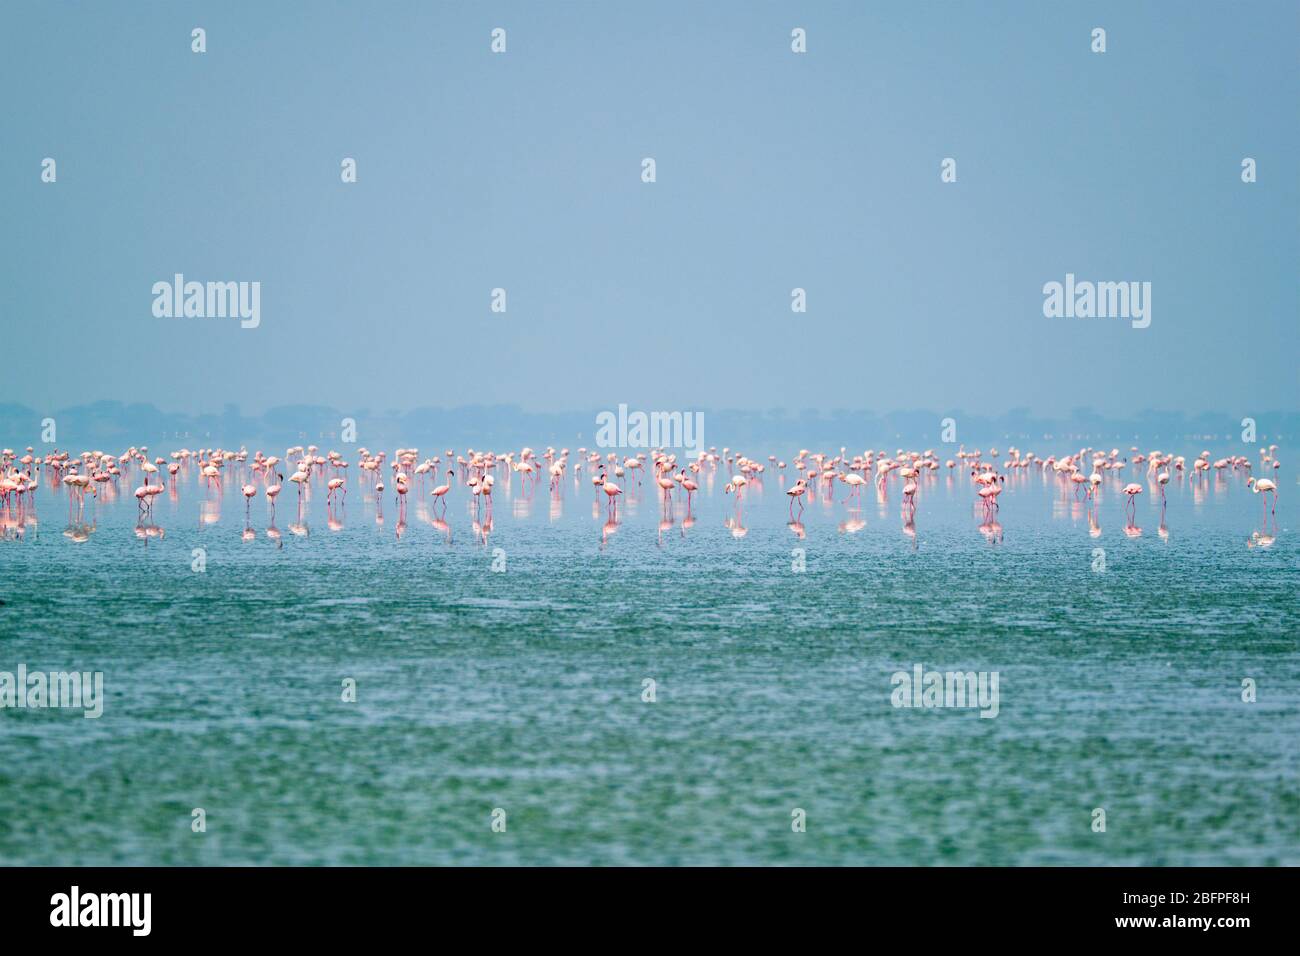 Oiseaux roses flamants au lac de sel de Sambhar au Rajasthan. Inde Banque D'Images